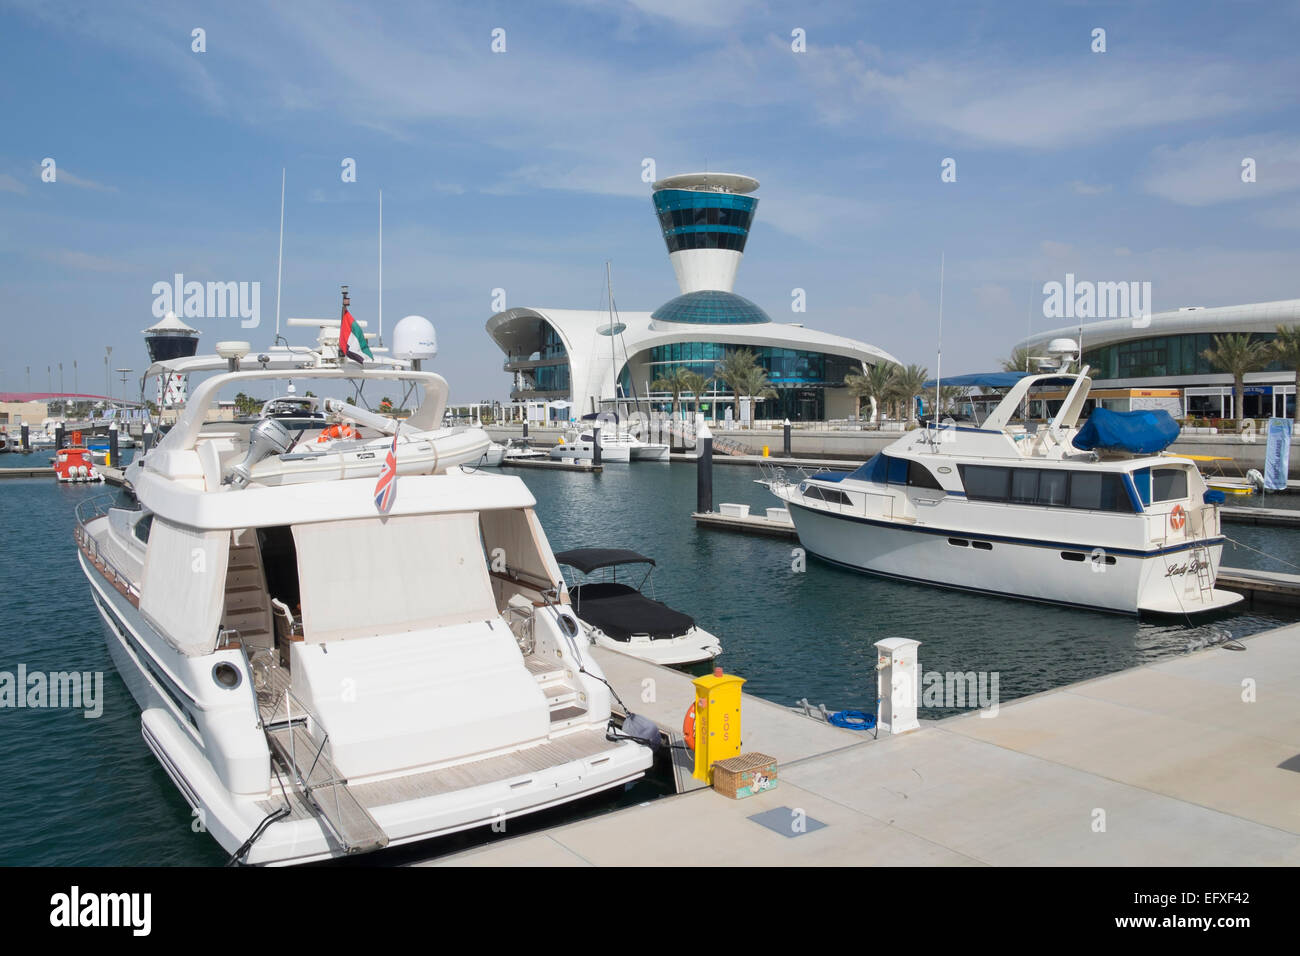 Yas Marina on Yas Island in Abu Dhabi United Arab Emirates Stock Photo